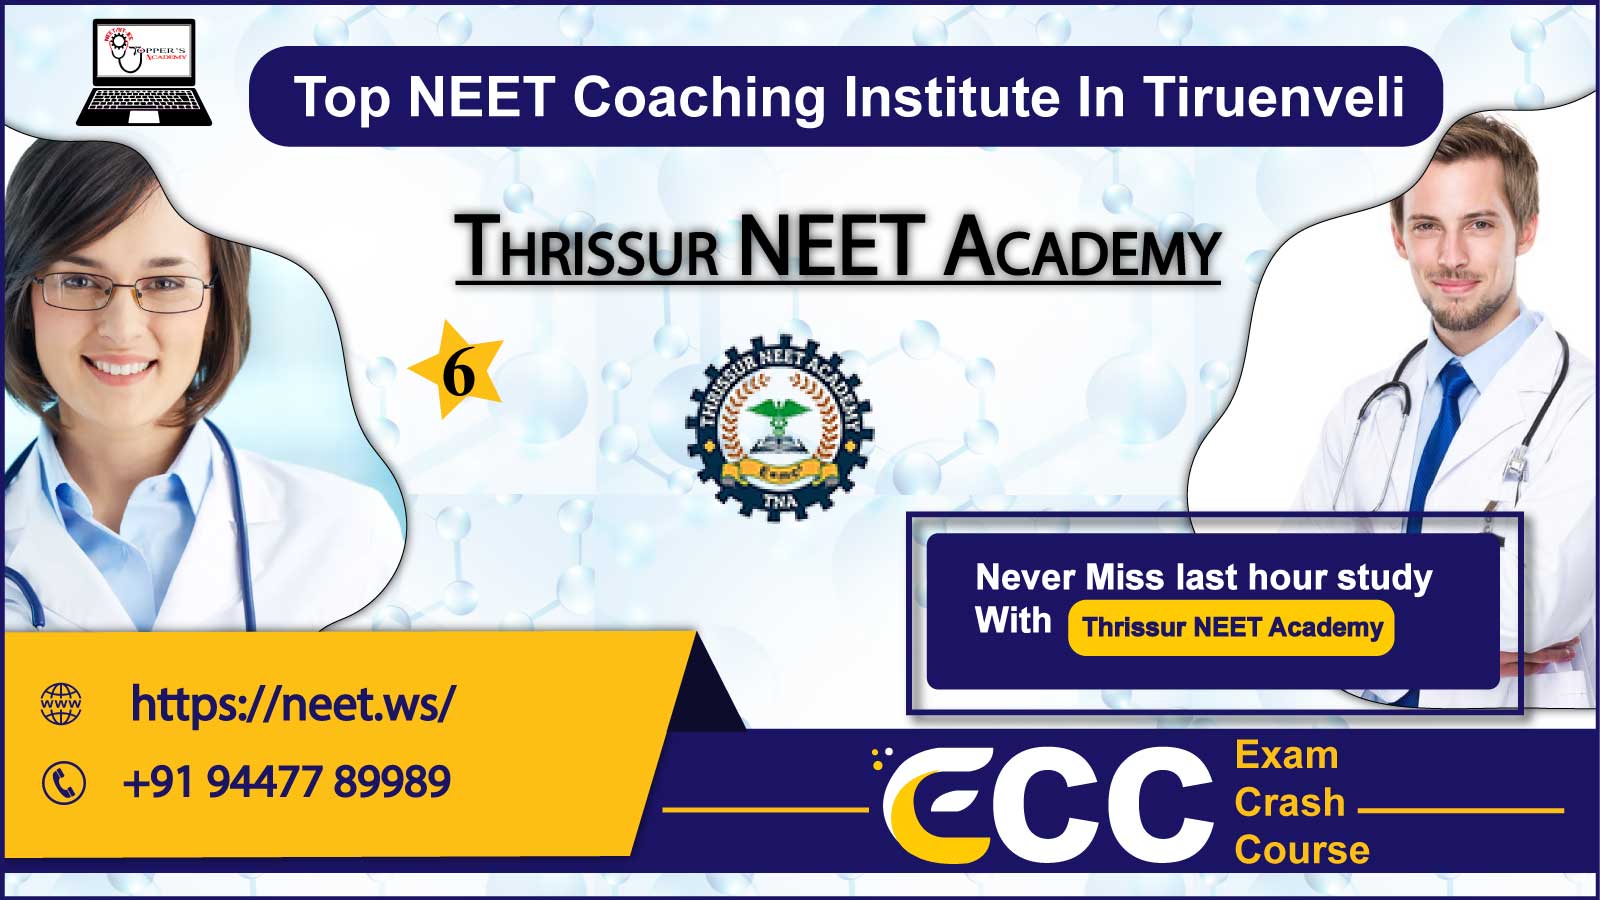 Thrissur NEET Academy in Tiruenveli